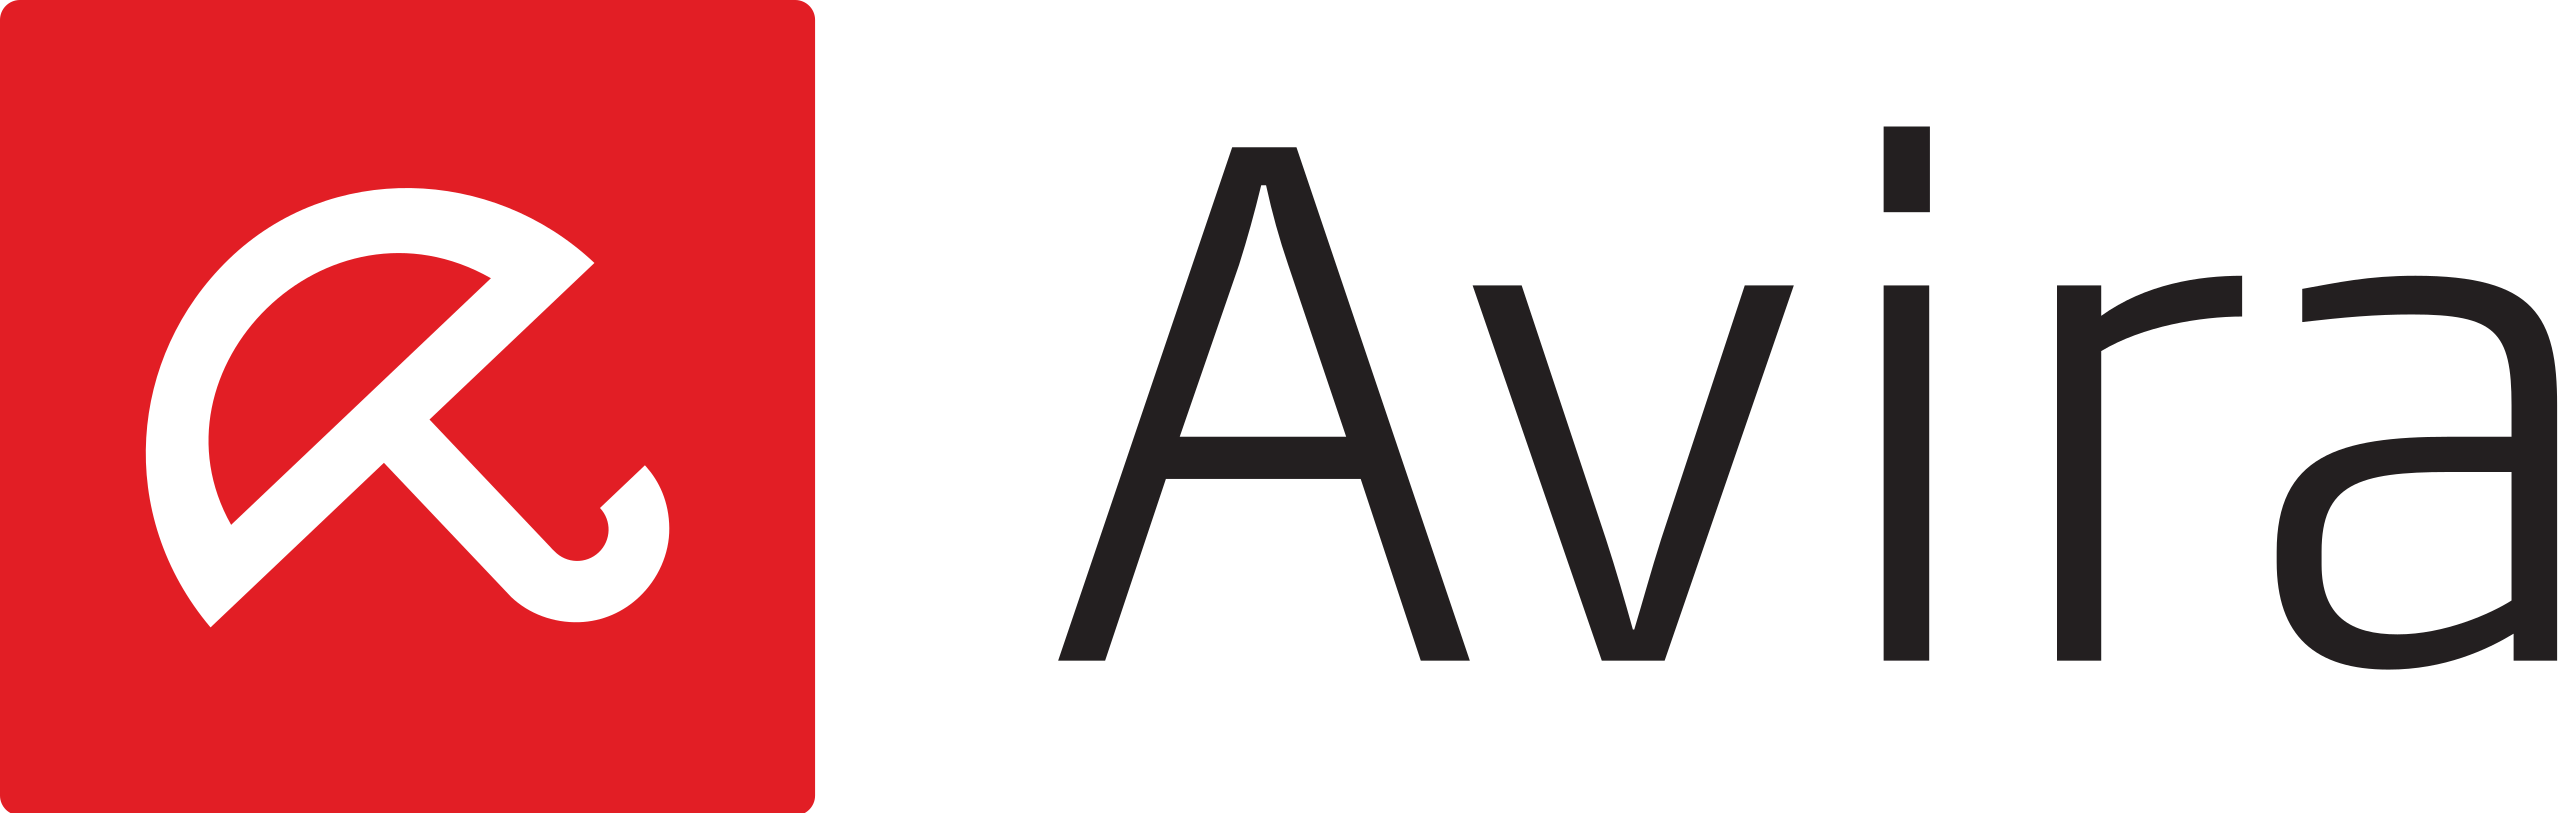 Avira_logo_2014.svg